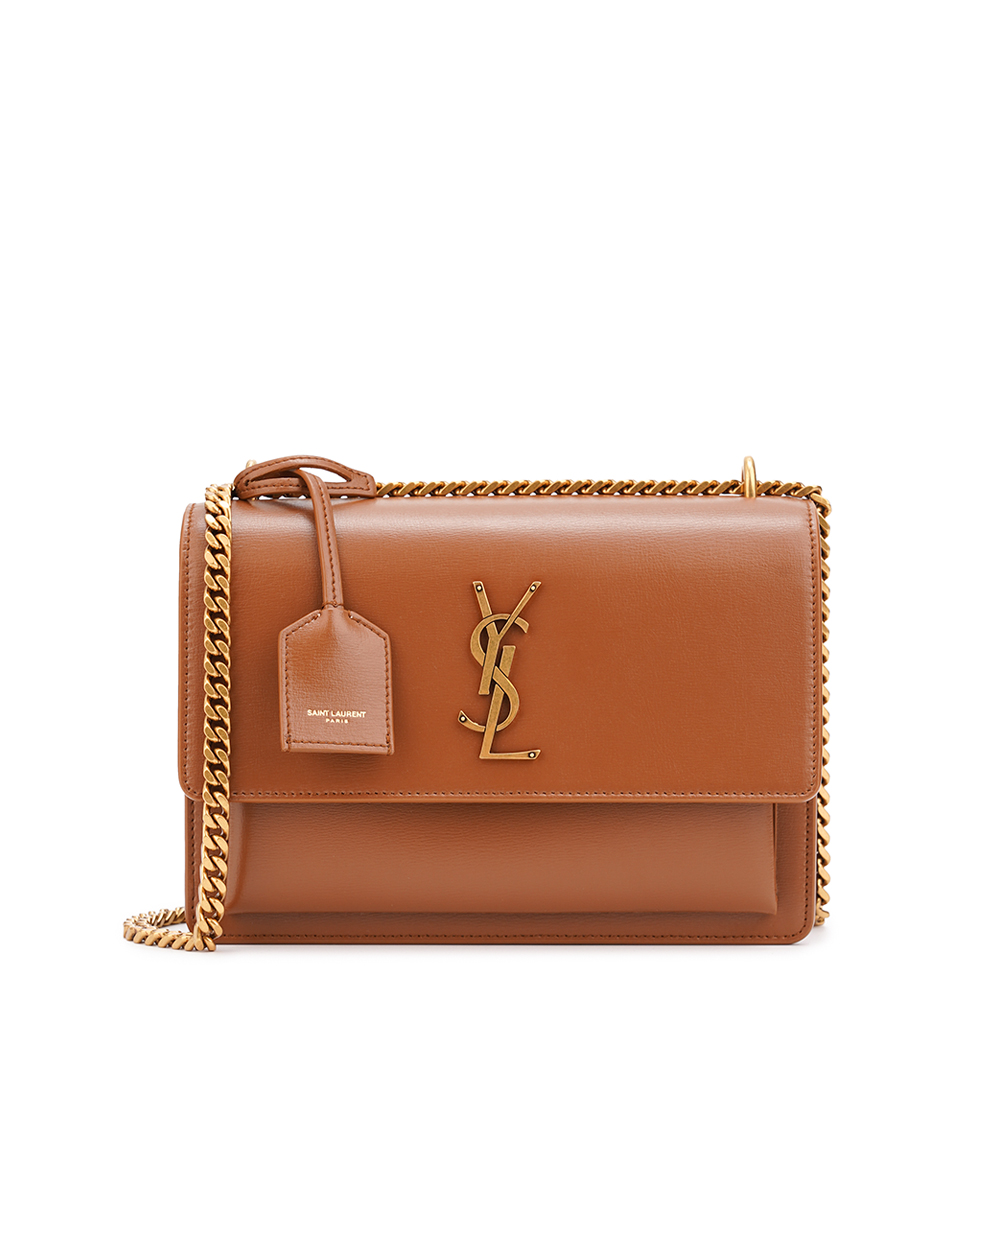 Кожаная сумка Sunset Medium Saint Laurent 442906-D420W, коричневый цвет • Купить в интернет-магазине Kameron